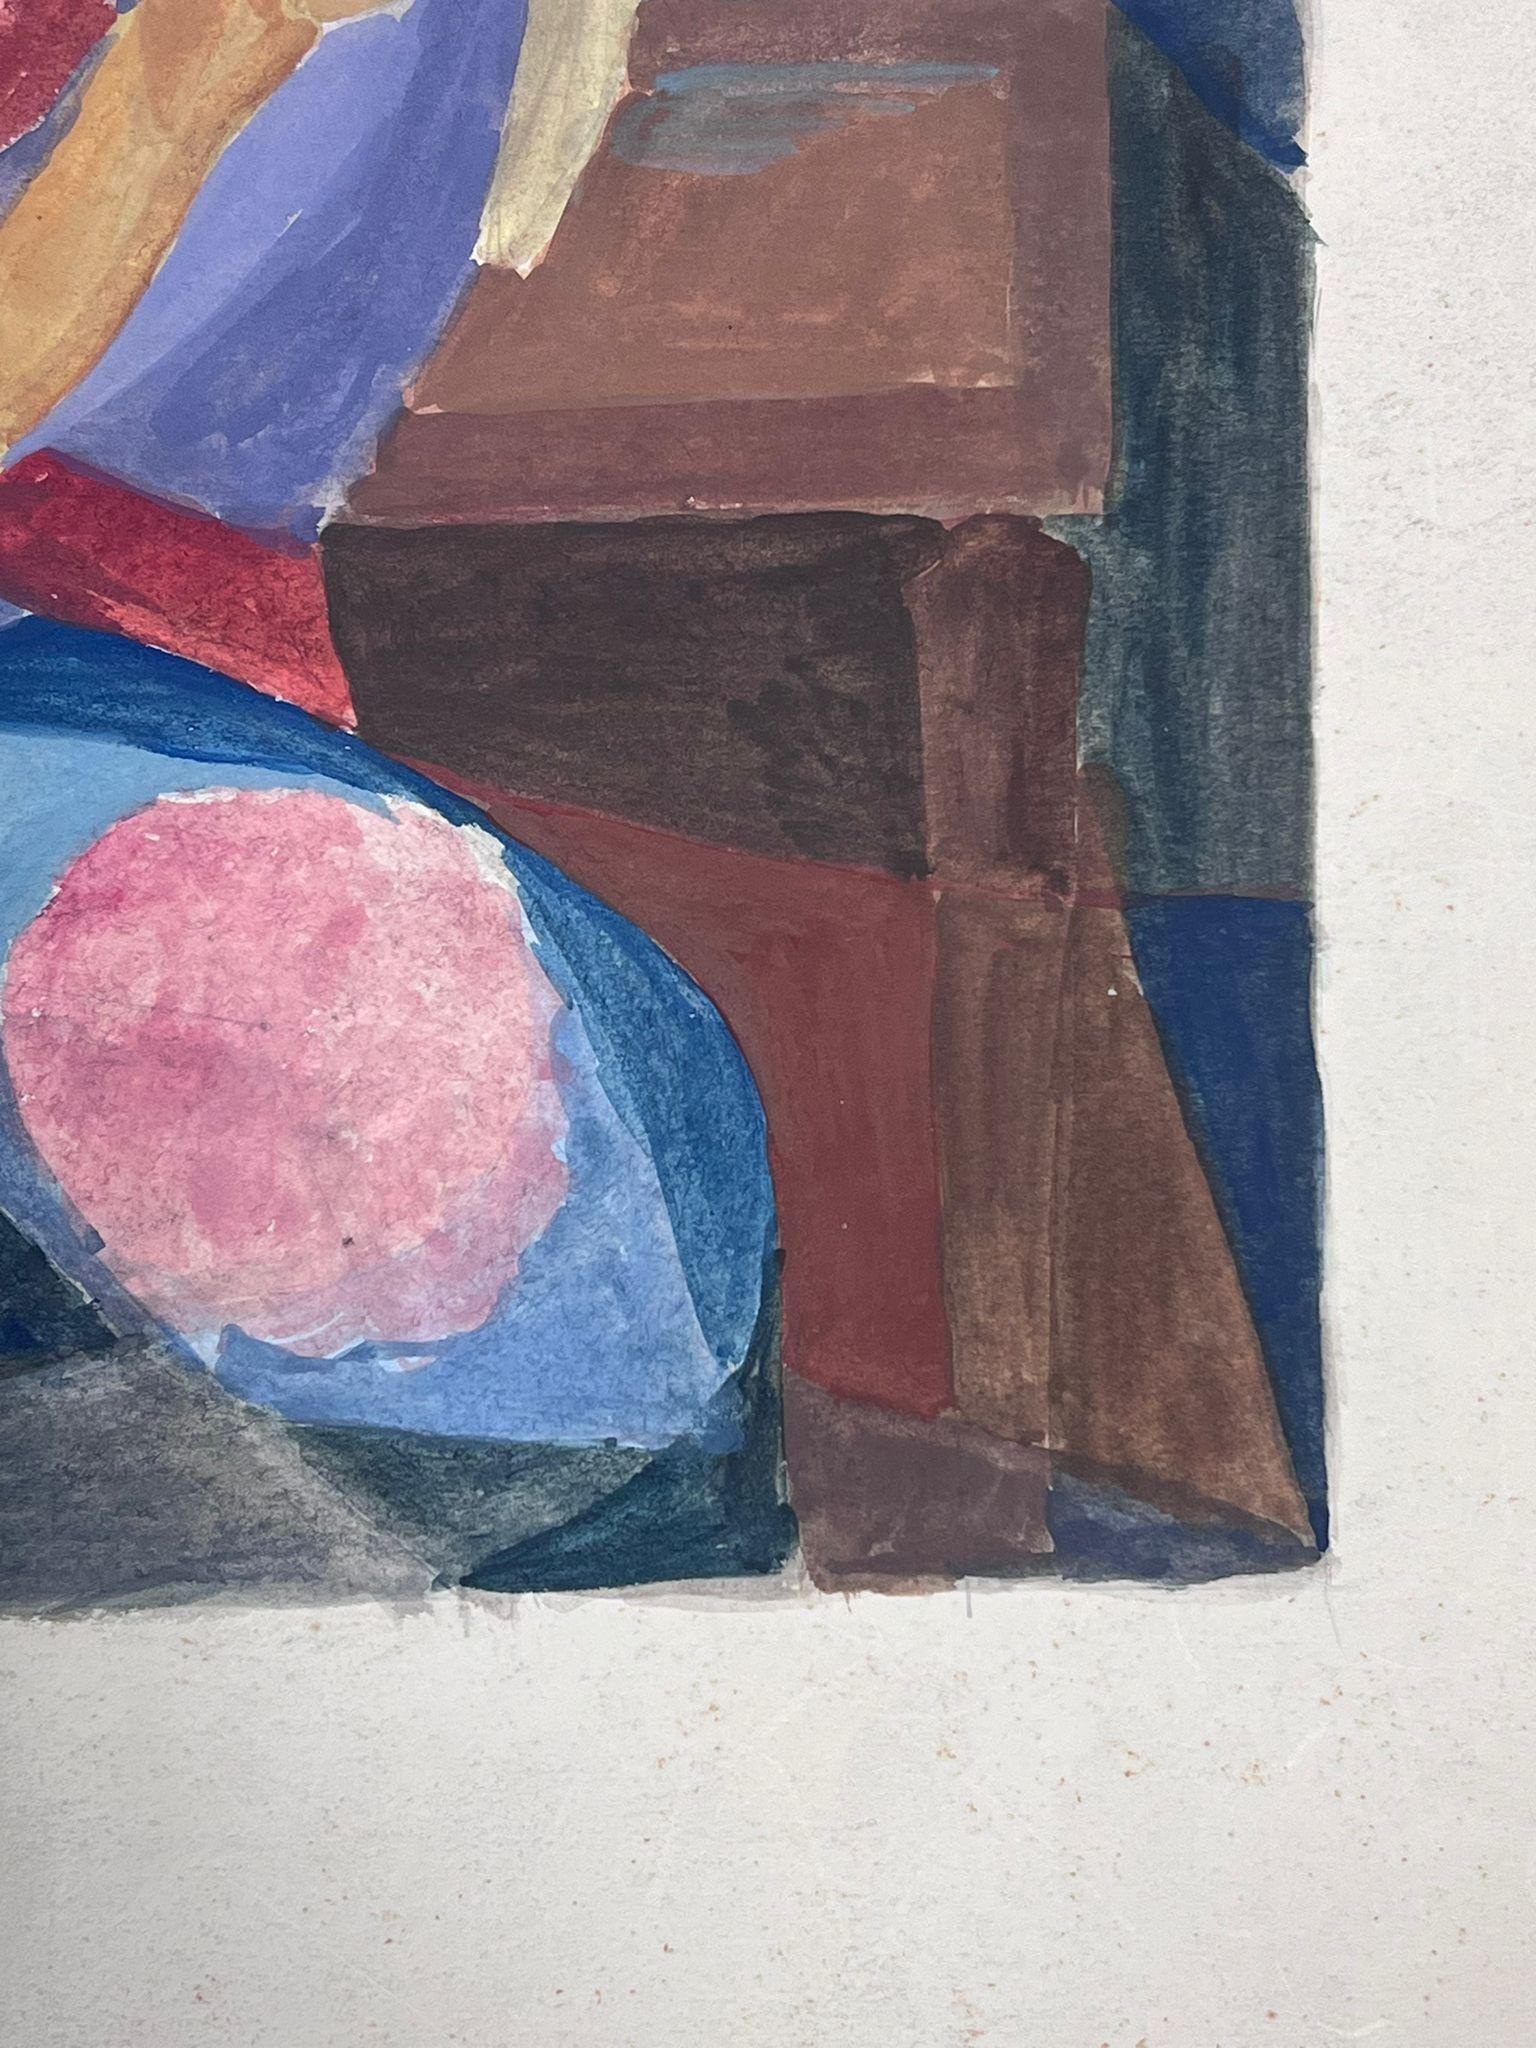 Mutter und Tochter
von Guy Nicod
(Französisch 1923 - 2021)
Aquarell auf Künstlerpapier, ungerahmt
Gemälde: 18,5 x 15,5 Zoll
Herkunft: Künstlernachlass, Frankreich
Zustand: sehr guter und gesunder Zustand